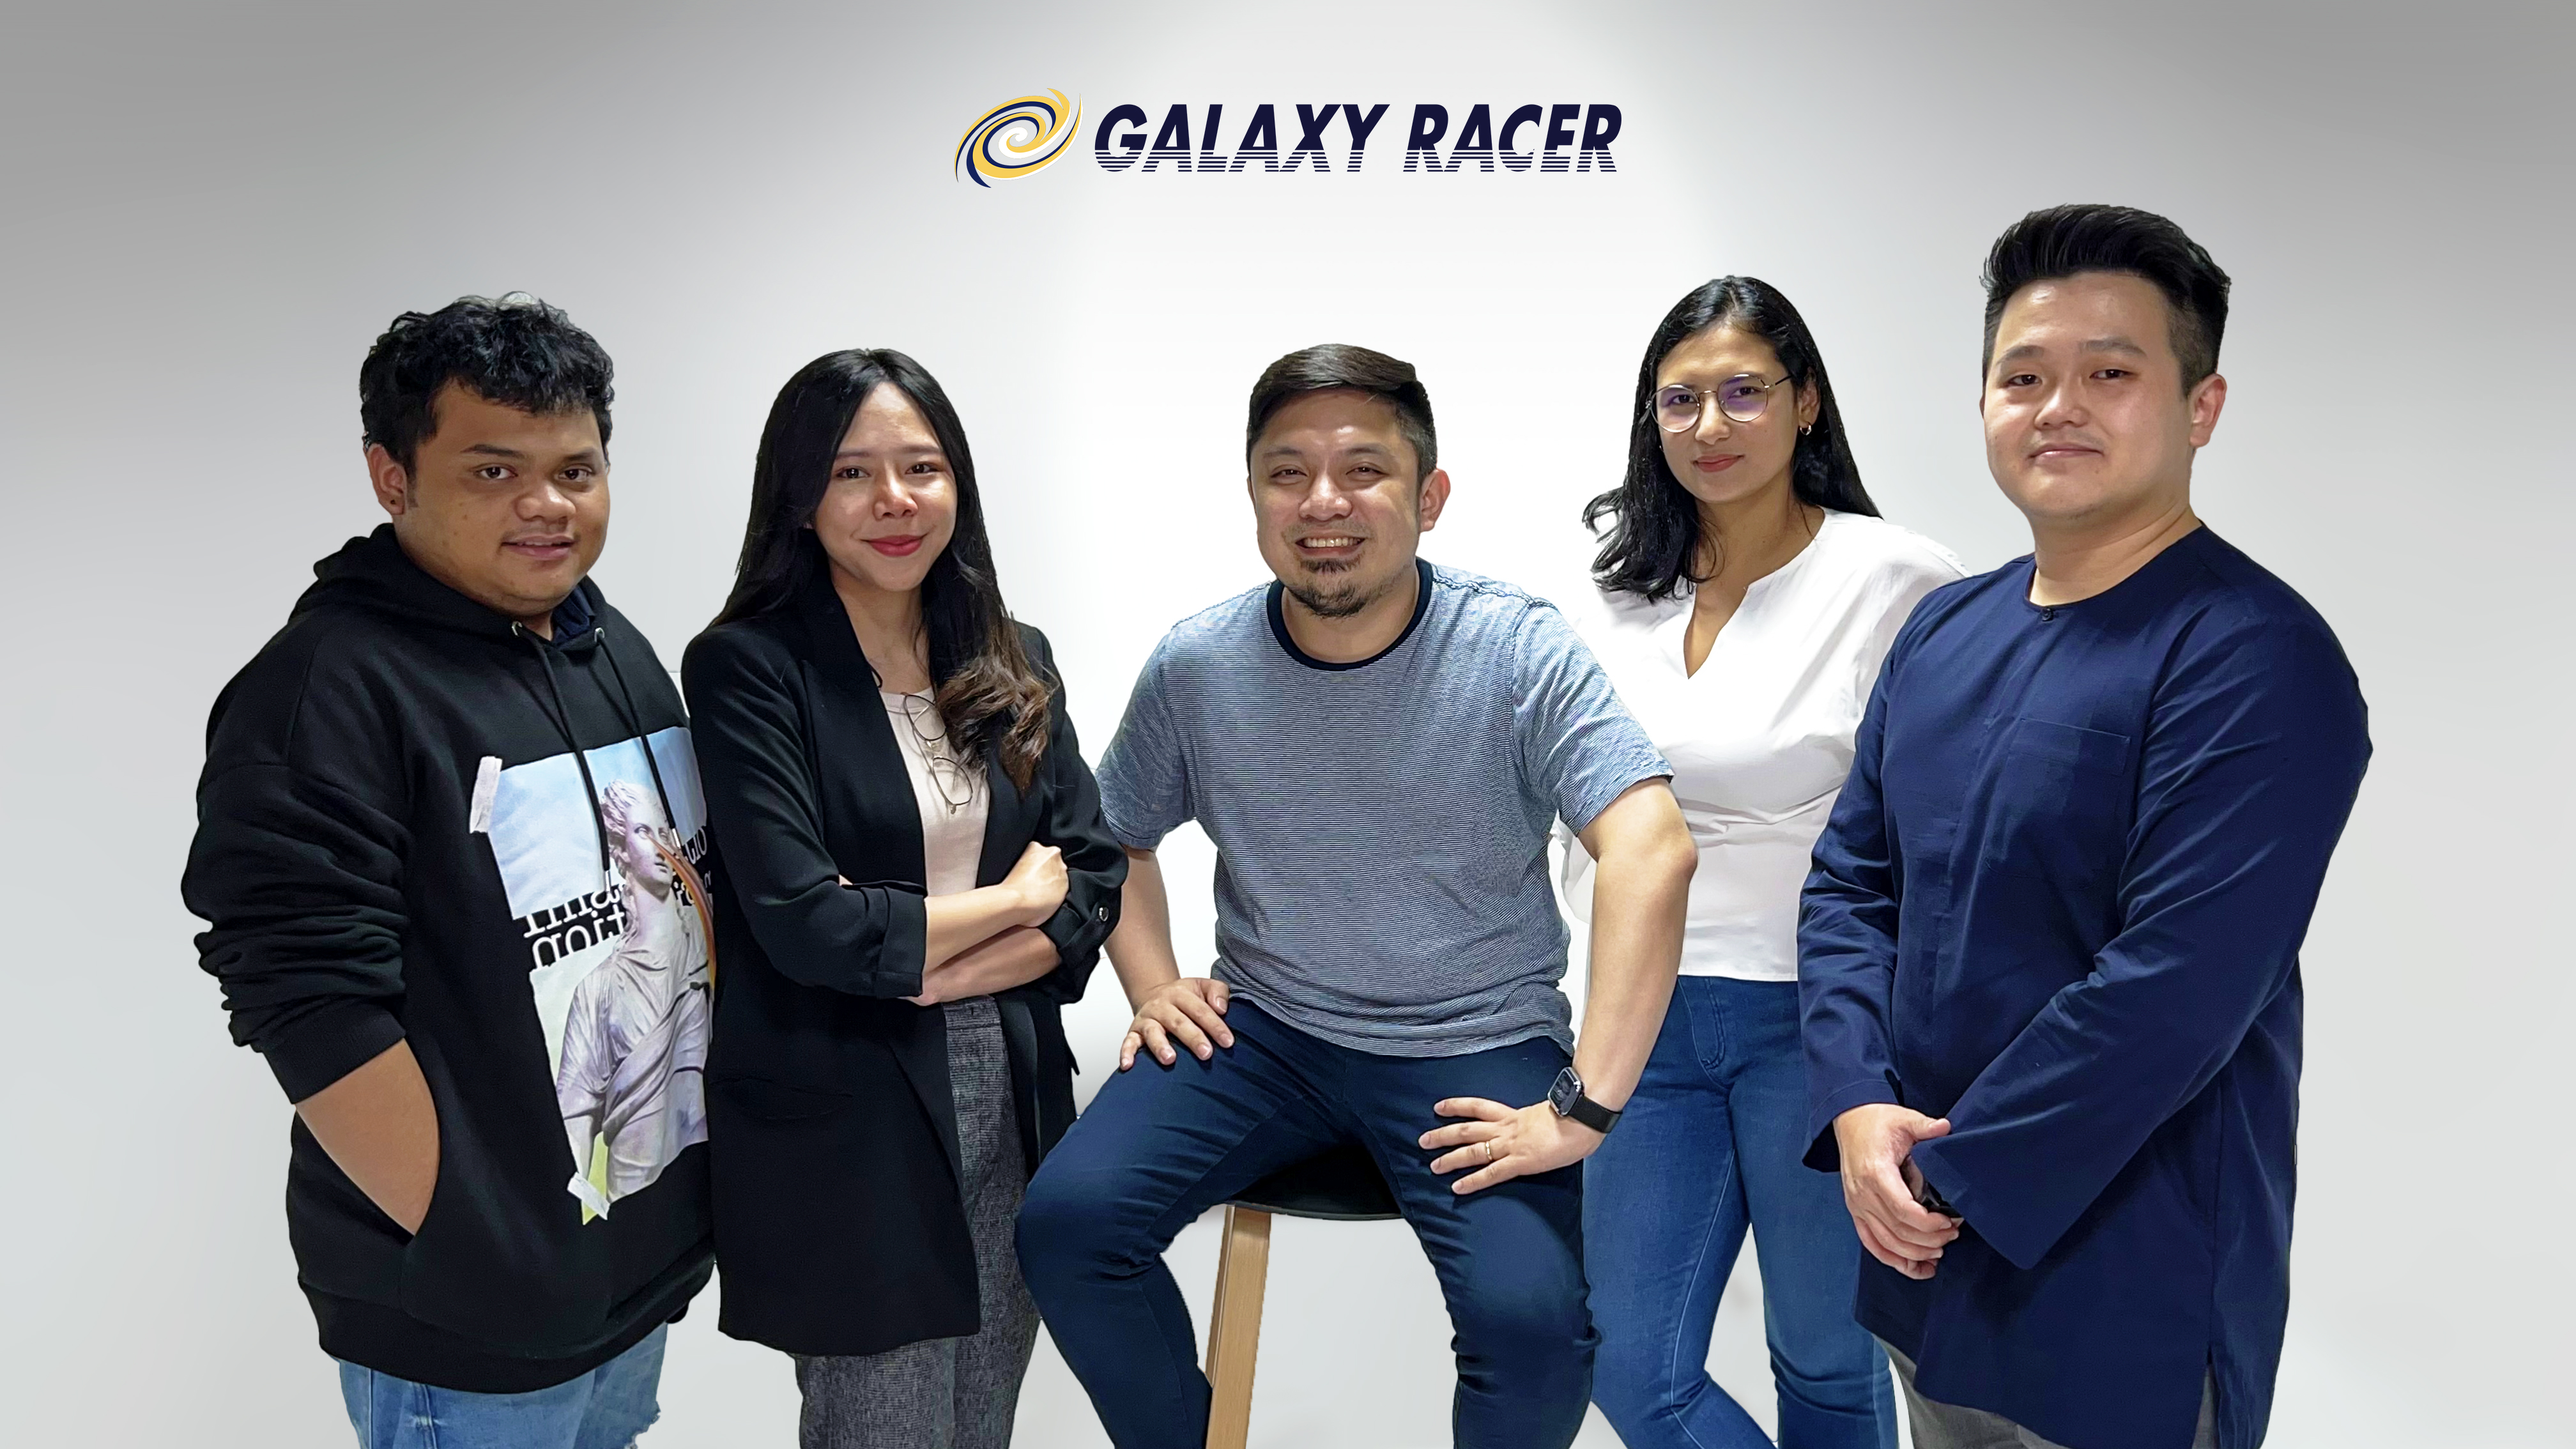 Galaxy Racer ทยานสู่ความสำเร็จในเอเชียตะวันออกเฉียงใต้   พร้อมเสริมความแข็งแกร่งเพื่อพัฒนาธุรกิจในประเทศไทย 